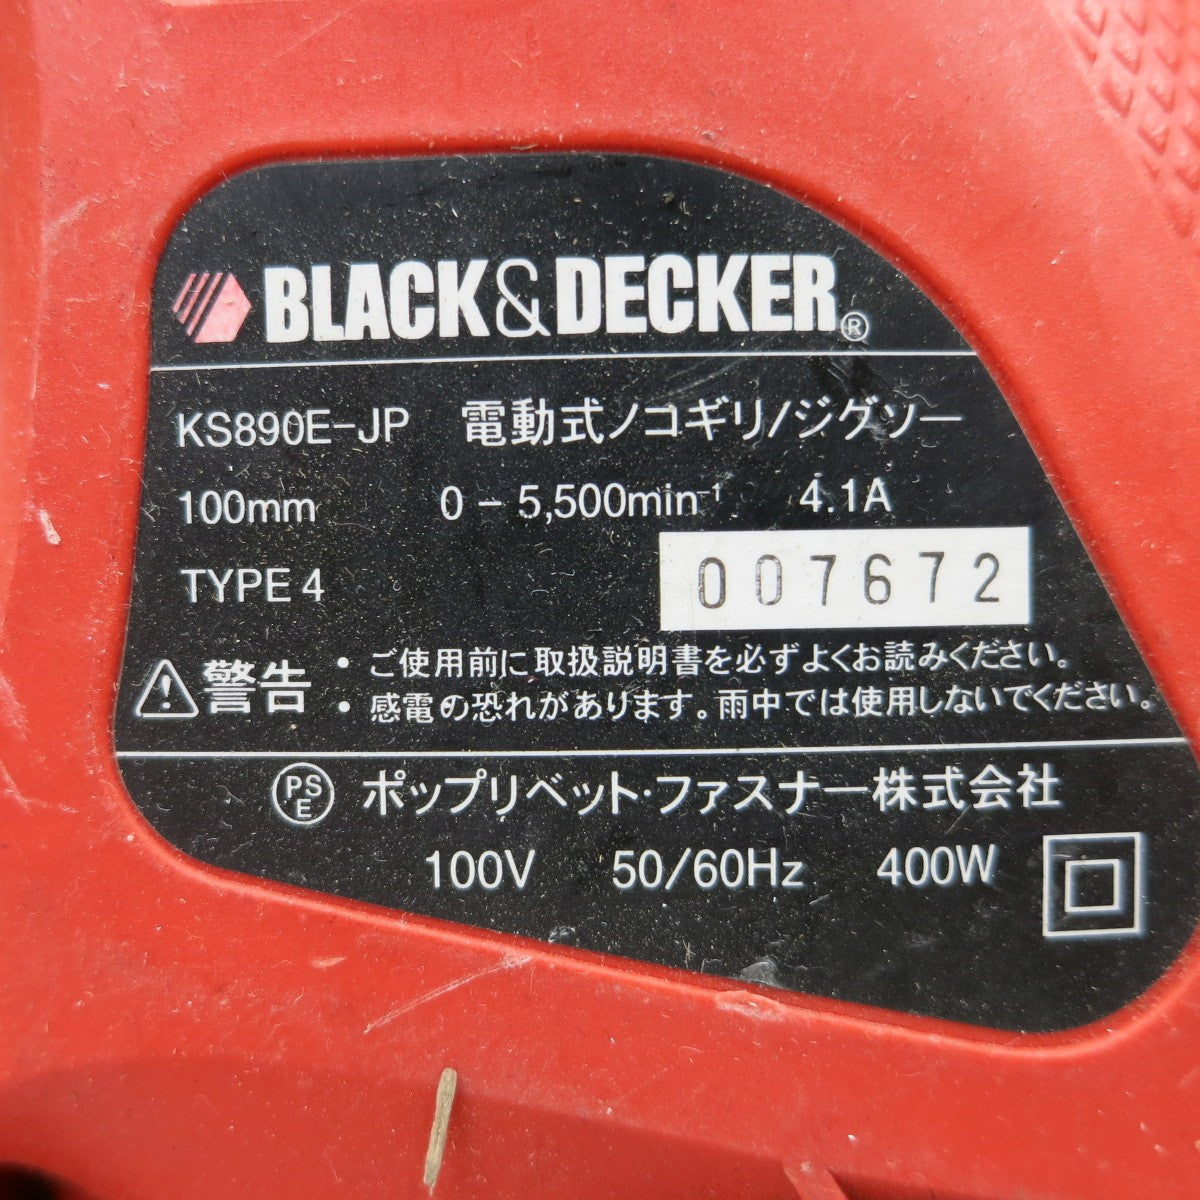 [送料無料] ◆BLACK&DECKER ブラック&デッカー 電動式ノコギリ KS890E-JP ジグソー 切断機 電動工具◆